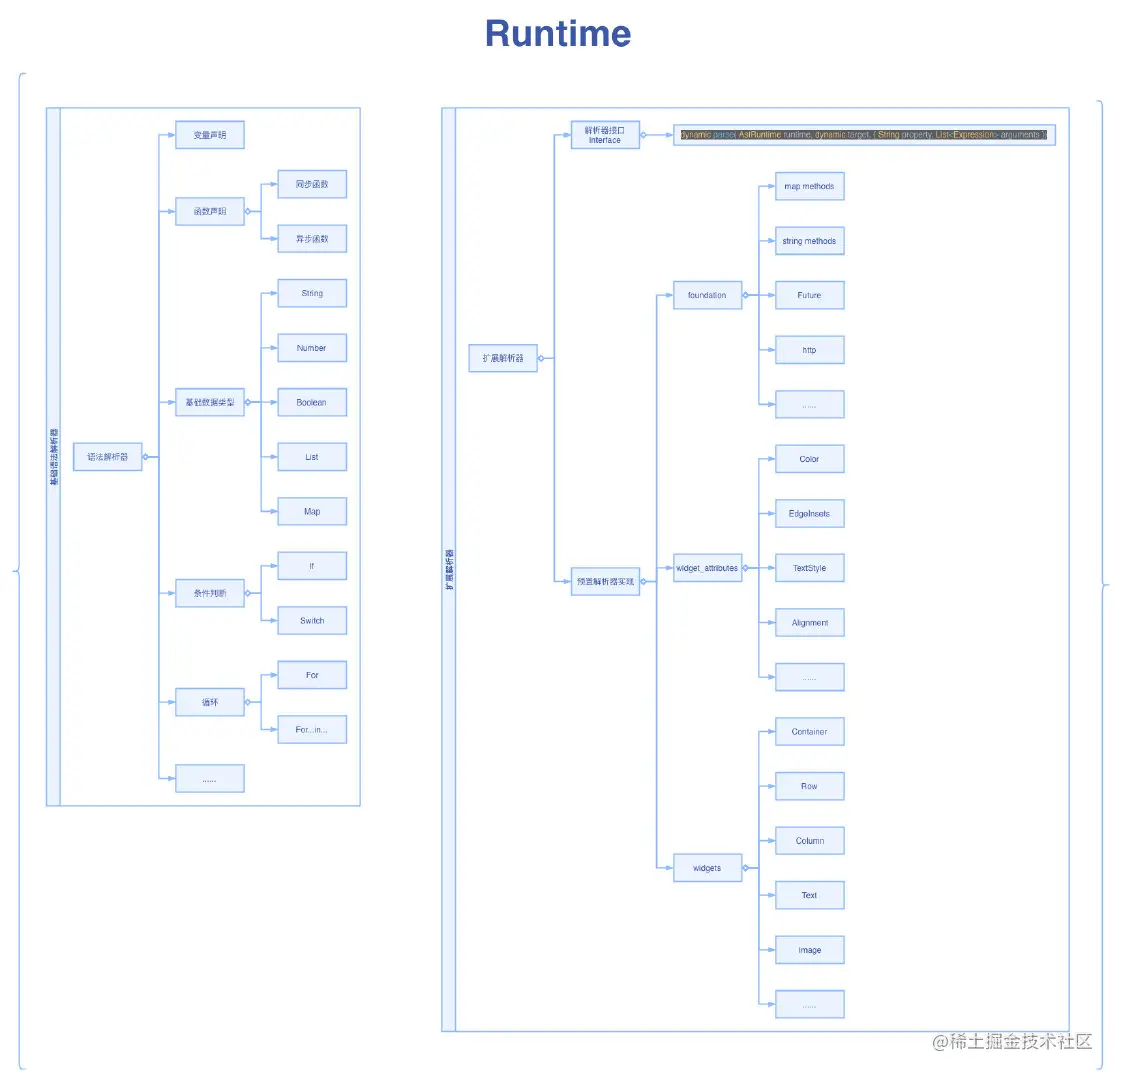 runtime_parser